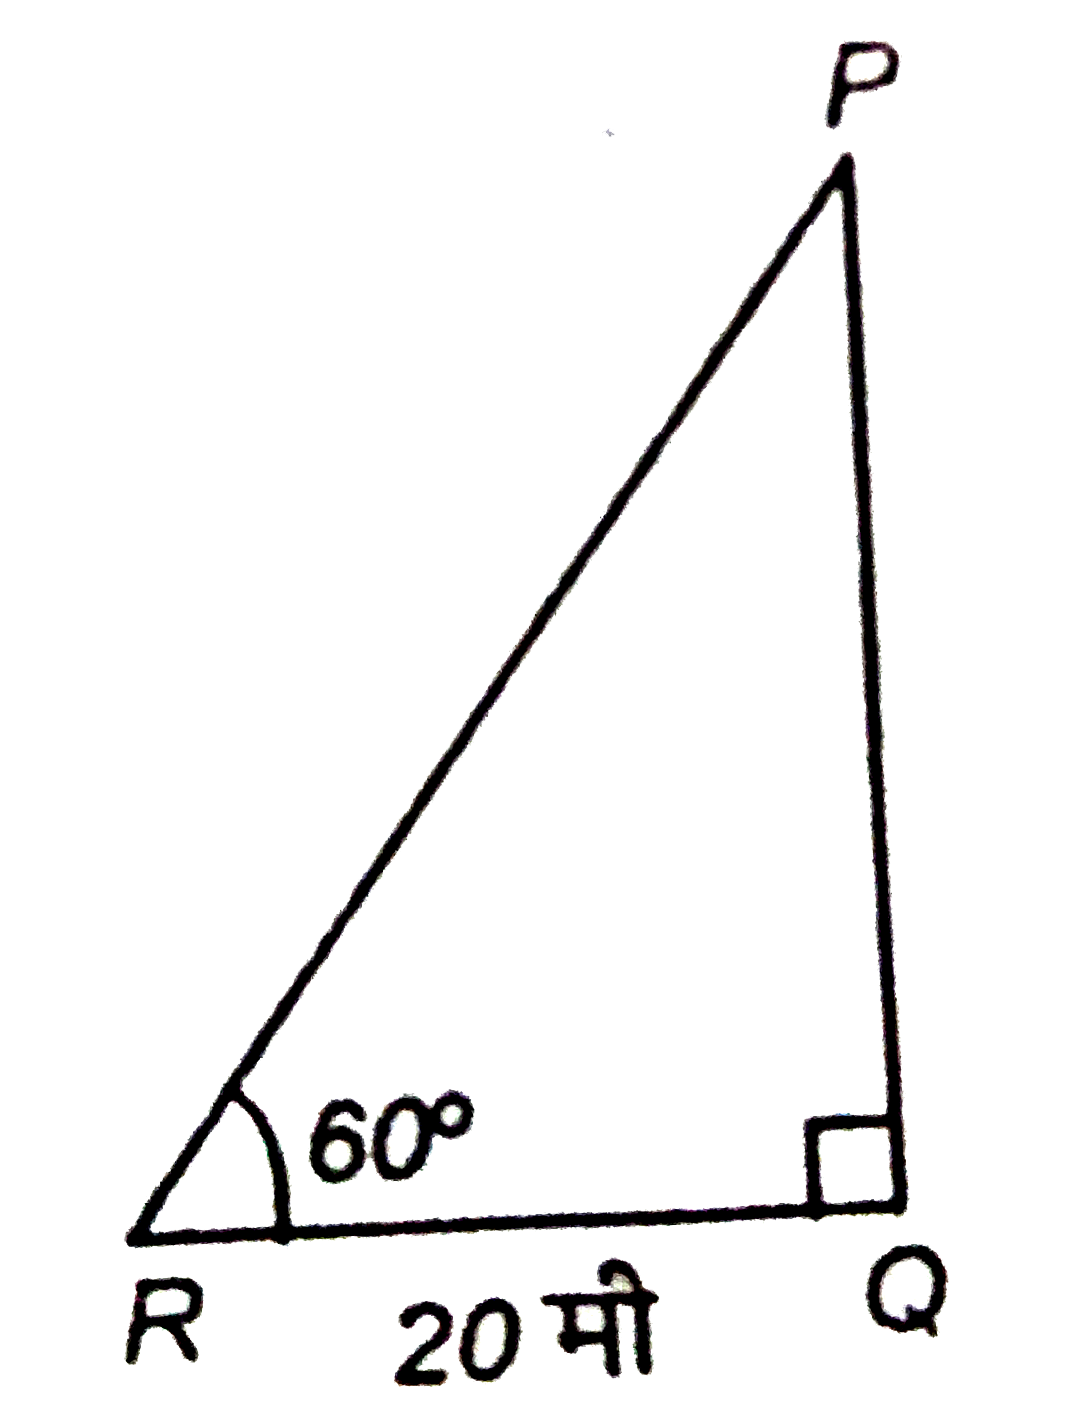 दिए गए  चित्र में PQ  एक मीनार है। उसकी जड़ से  20 मीटर   की दुरी पर जमीन  पर के किसी बिंदु R पर मीनार के शीर्ष  का उन्नयन  कोण 60^(@)है। मीनार की ऊँचाई है।